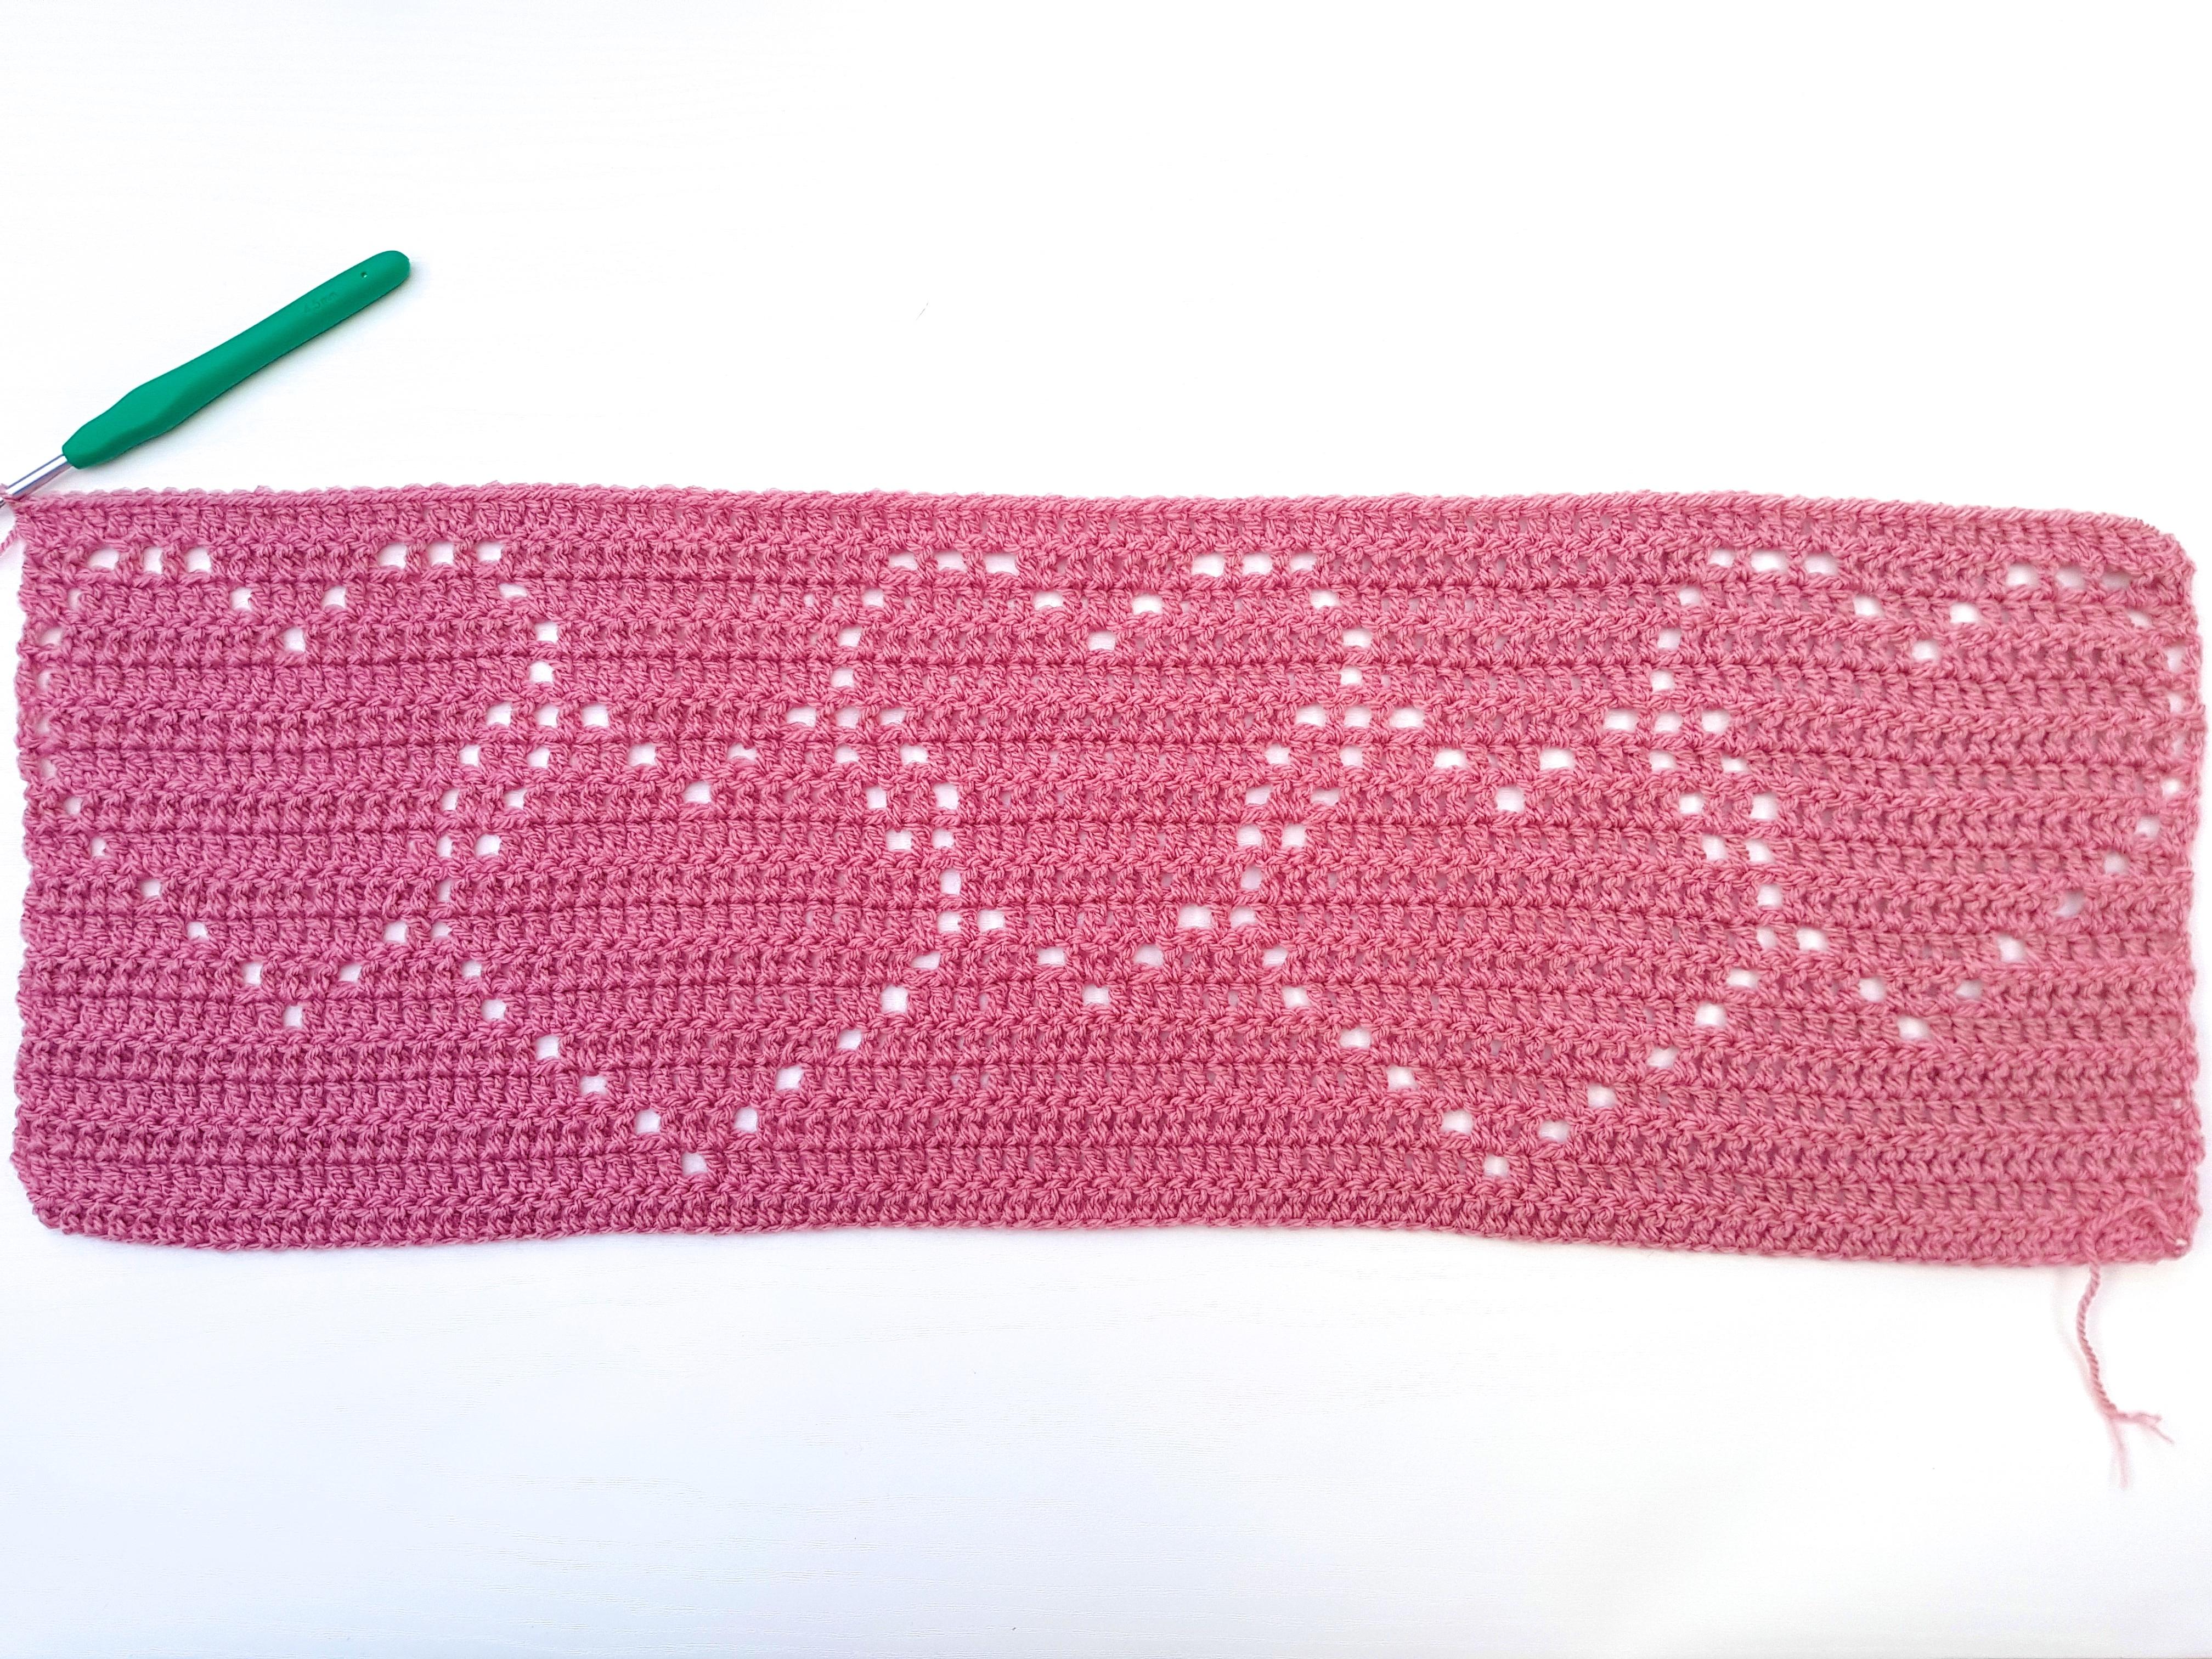 Linked Hearts Blanket Pattern by Emma Moss